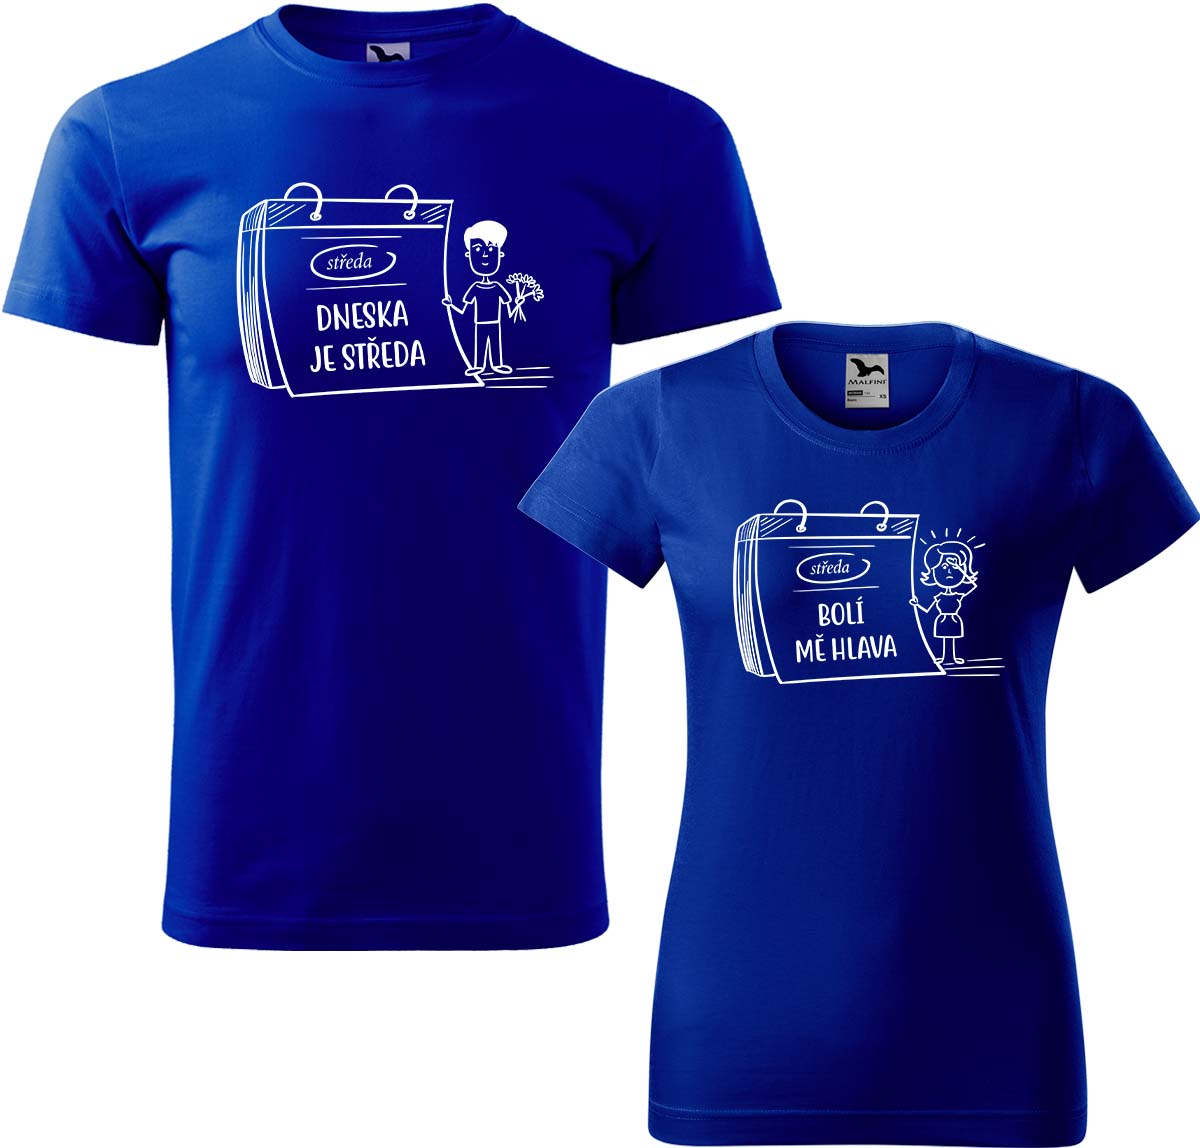 Trička pro páry - Dneska je středa Barva: Královská modrá (05), Velikost dámské tričko: M, Velikost pánské tričko: 2XL